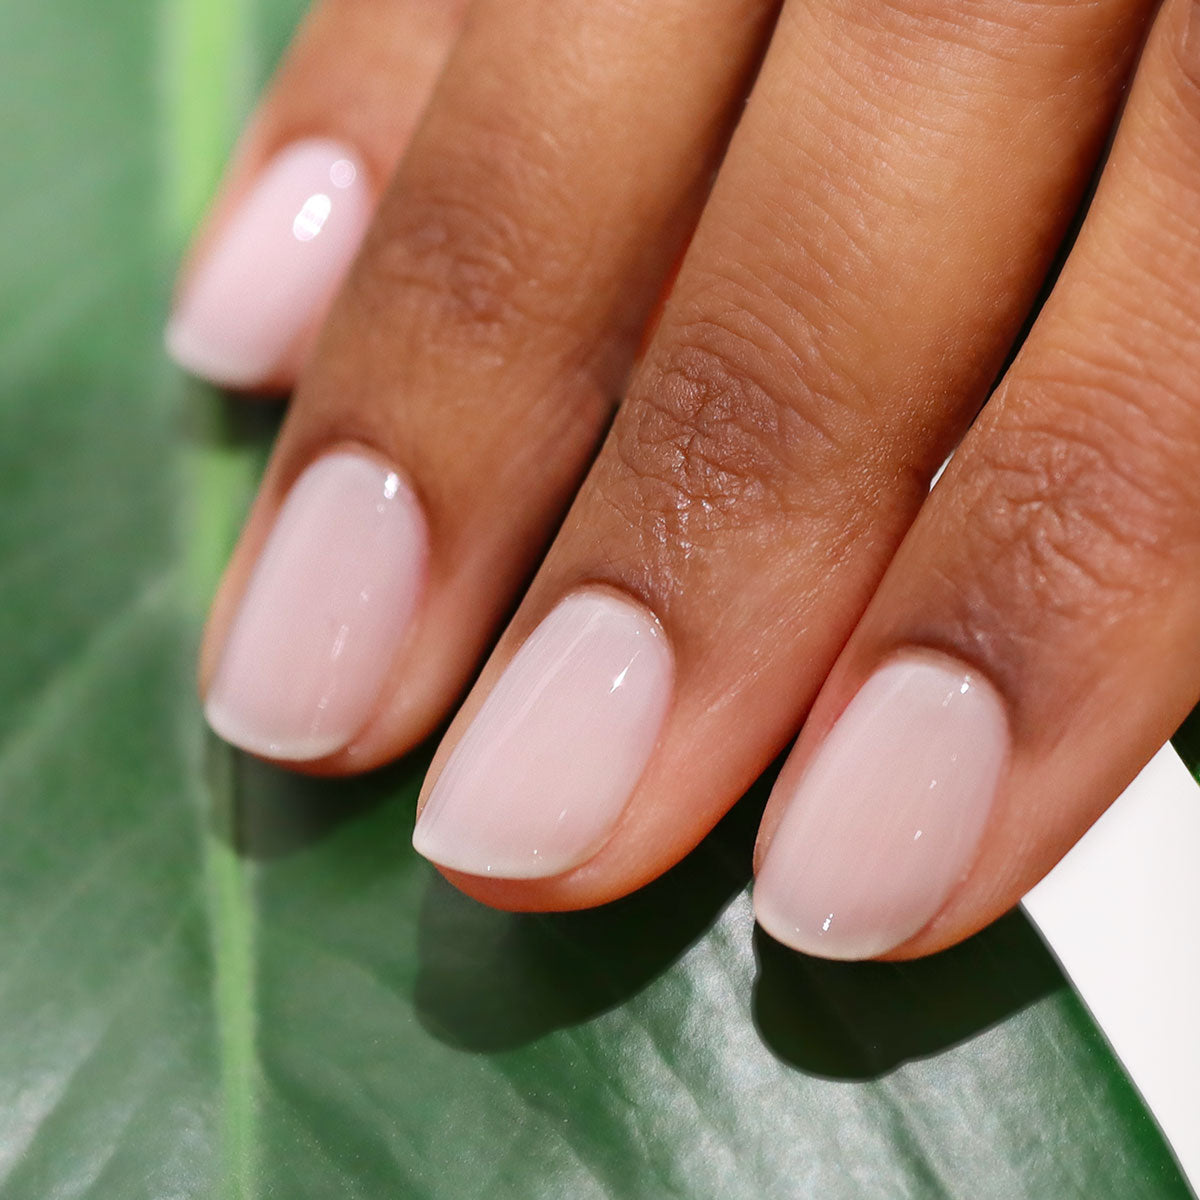 nail polish | Becoming Sleek